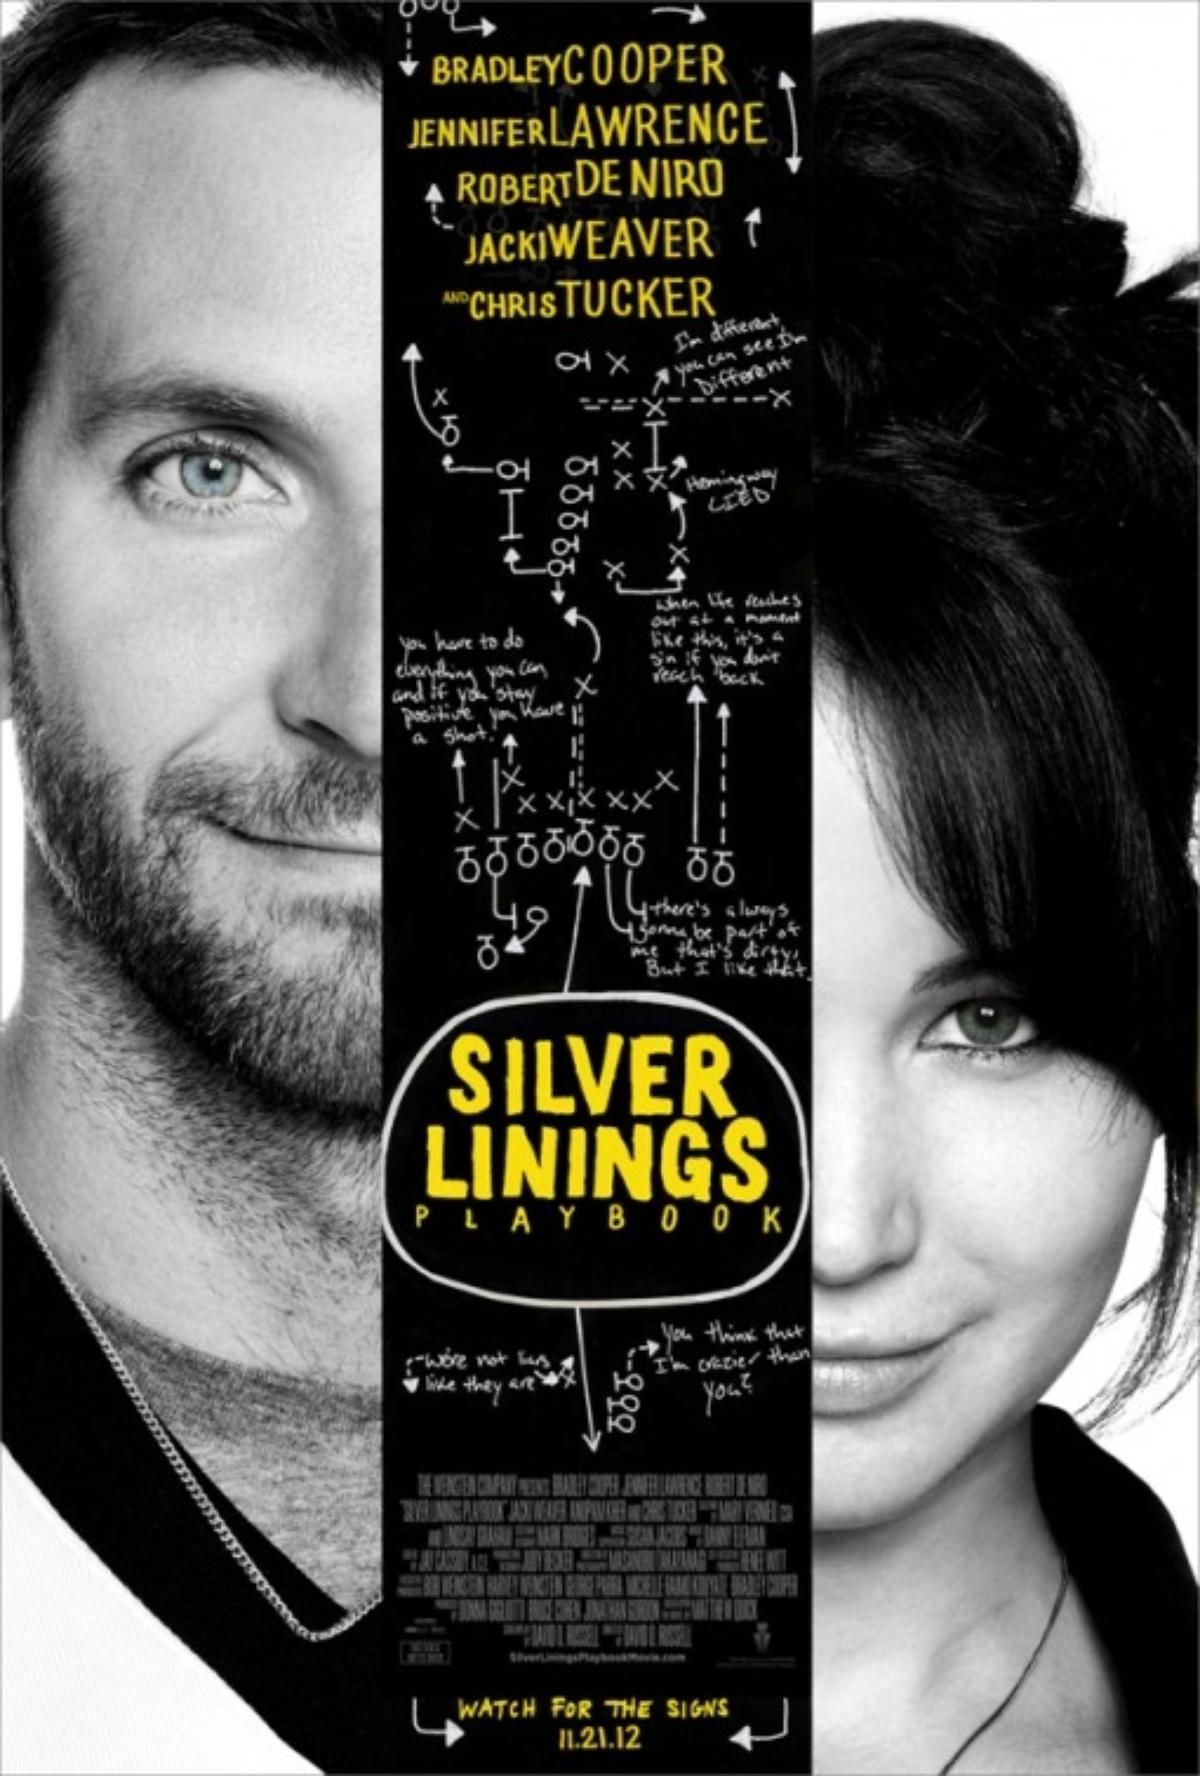 047-silver_linings_playbook_poster.jpg